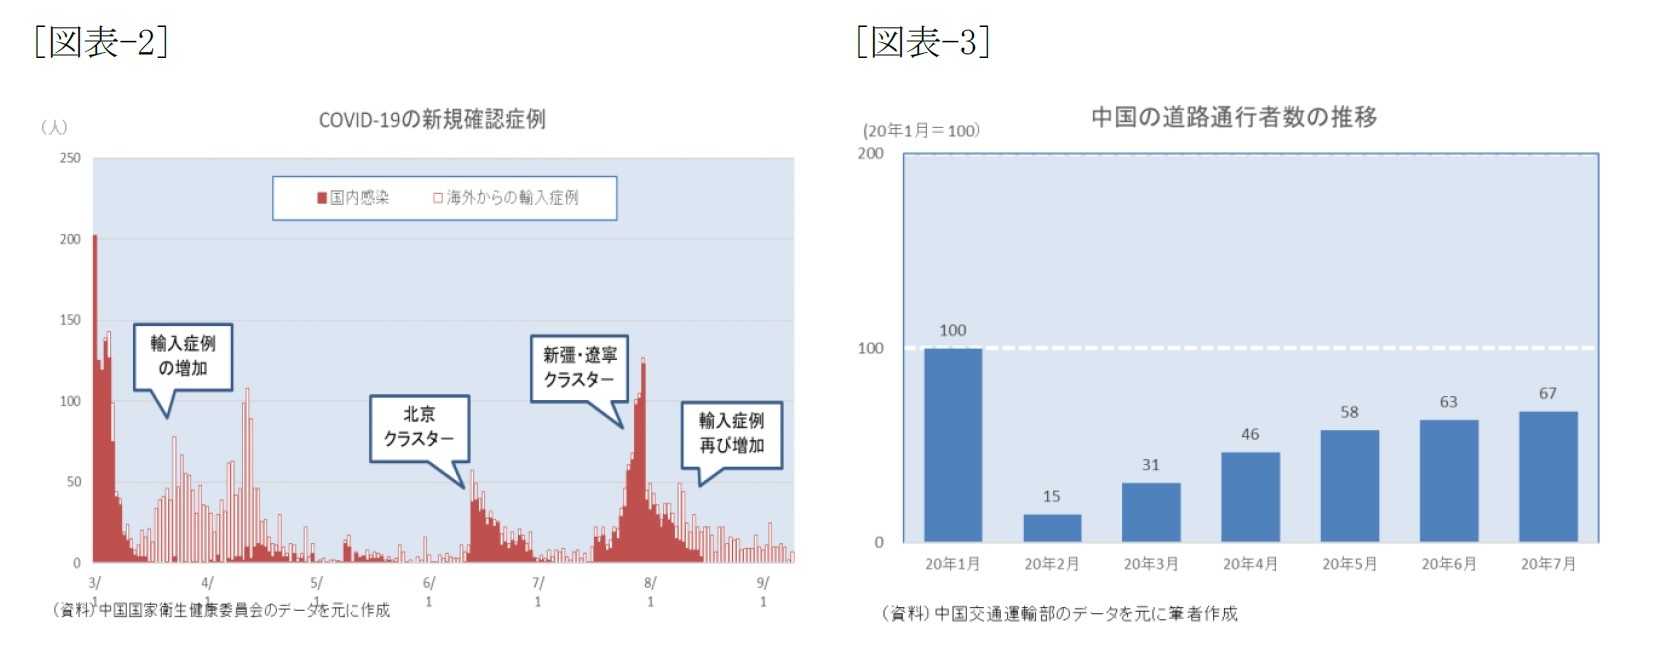 [図表-2]COVID-19の新規確認症例/[図表-3]中国の道路通行者数の推移